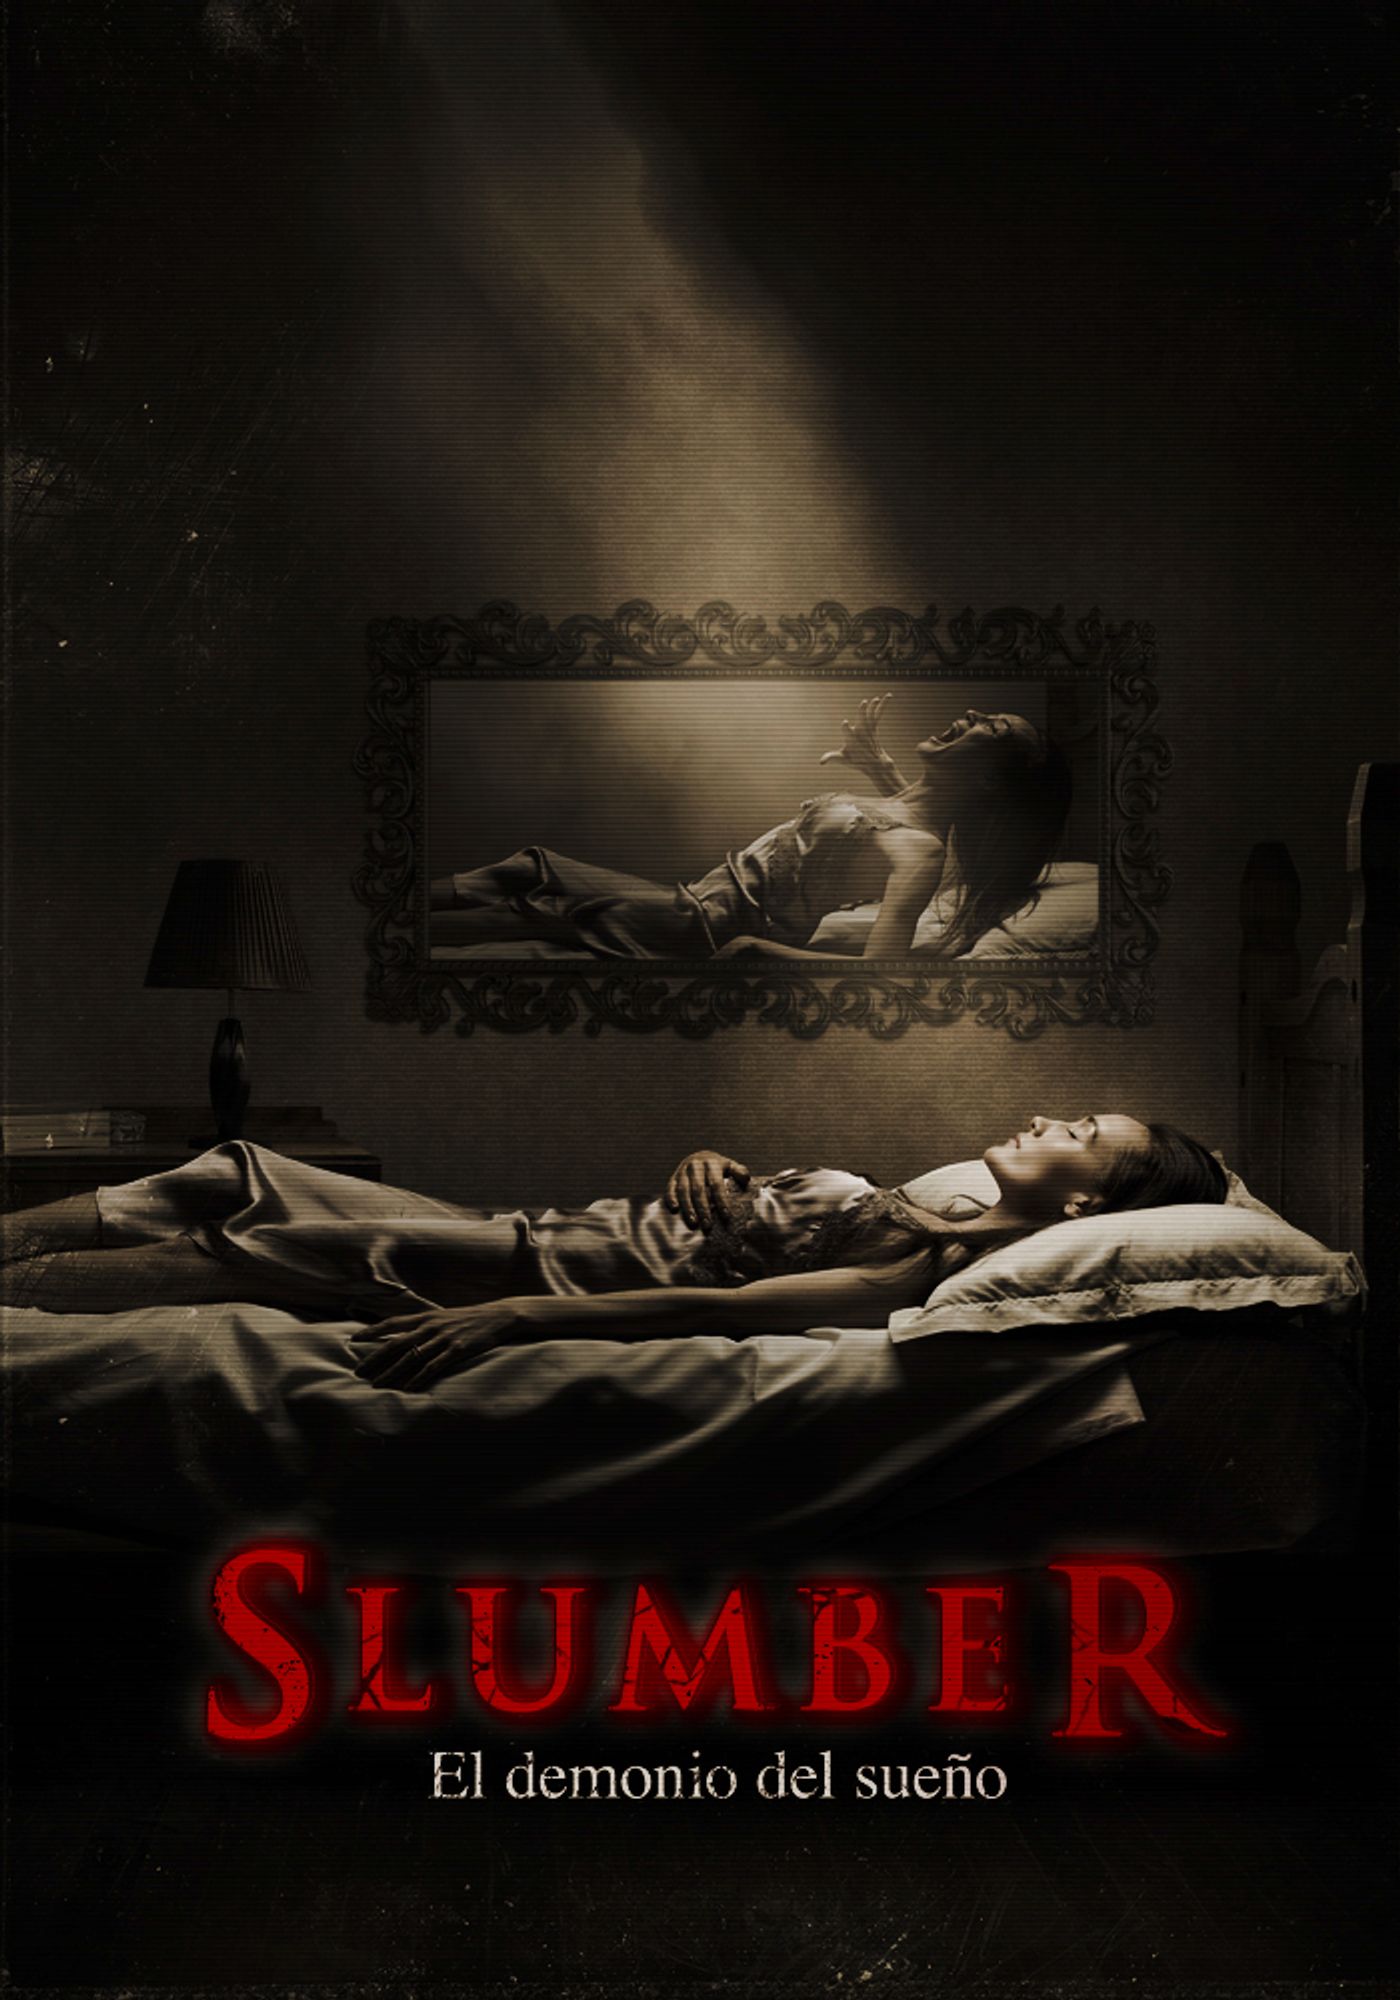 Slumber: El demonio del sueño